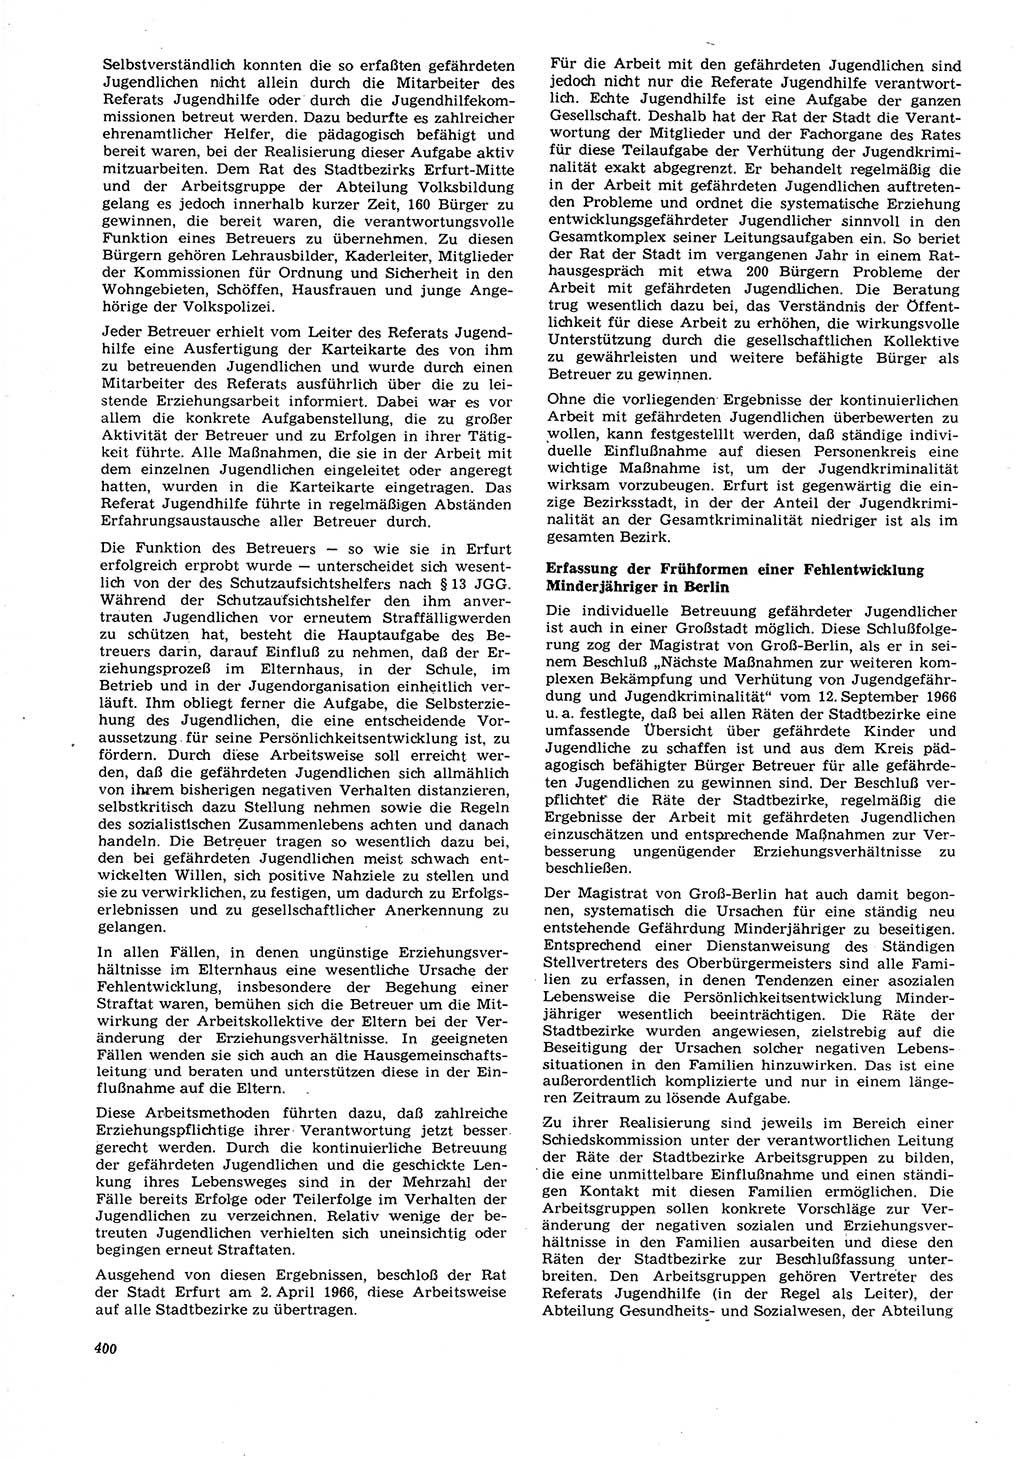 Neue Justiz (NJ), Zeitschrift für Recht und Rechtswissenschaft [Deutsche Demokratische Republik (DDR)], 21. Jahrgang 1967, Seite 400 (NJ DDR 1967, S. 400)